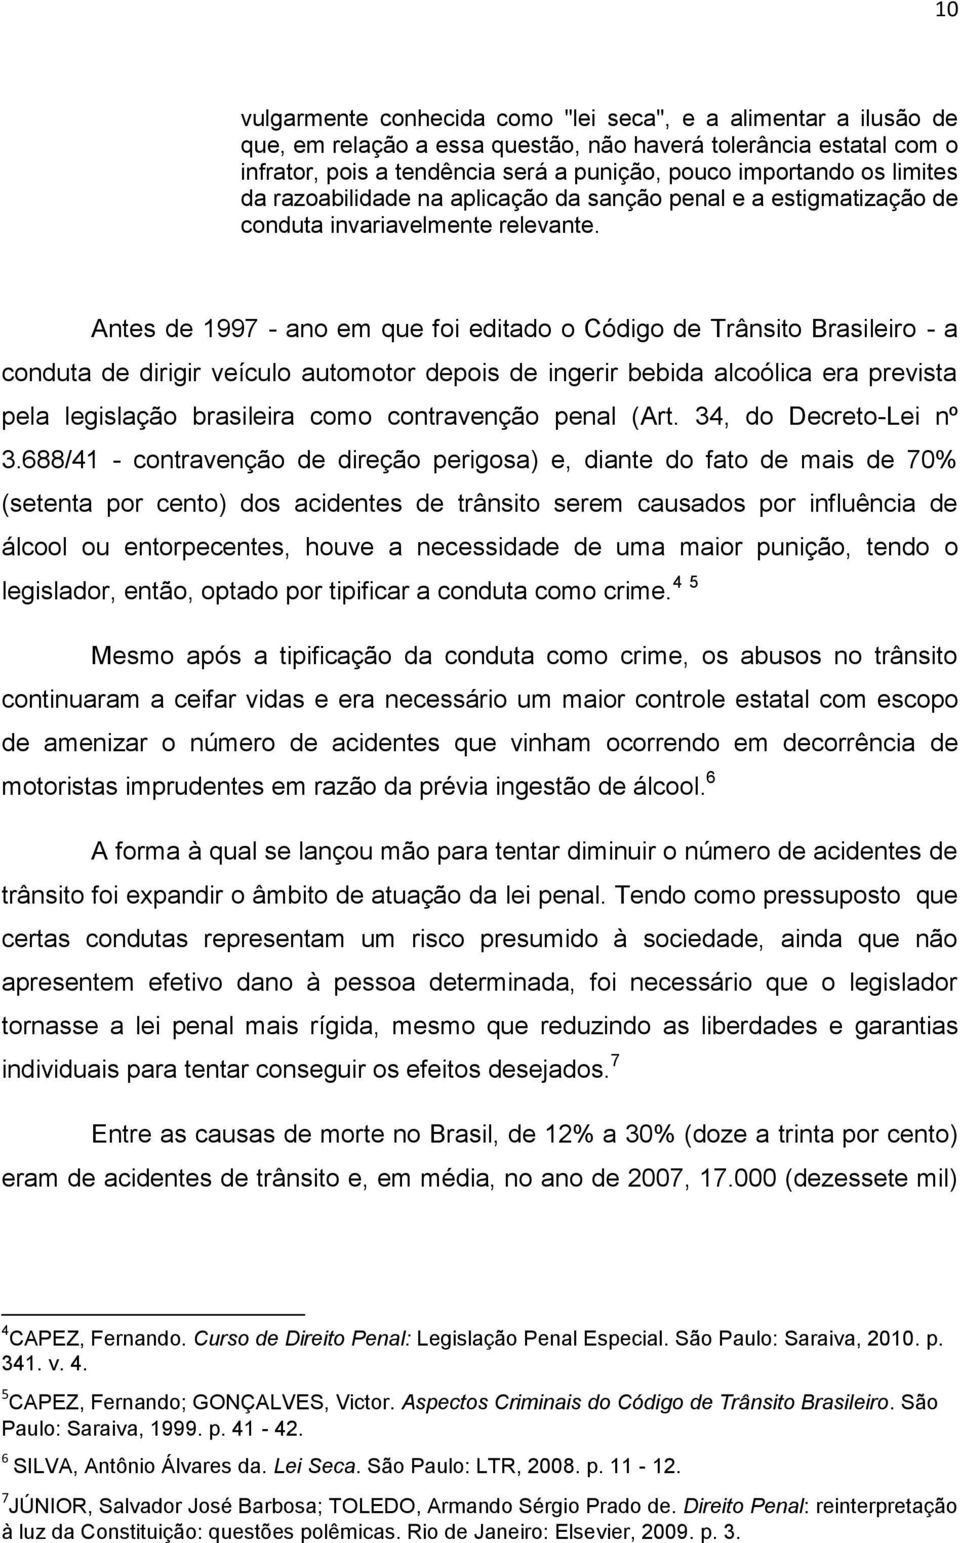 Antes de 1997 - ano em que foi editado o Código de Trânsito Brasileiro - a conduta de dirigir veículo automotor depois de ingerir bebida alcoólica era prevista pela legislação brasileira como